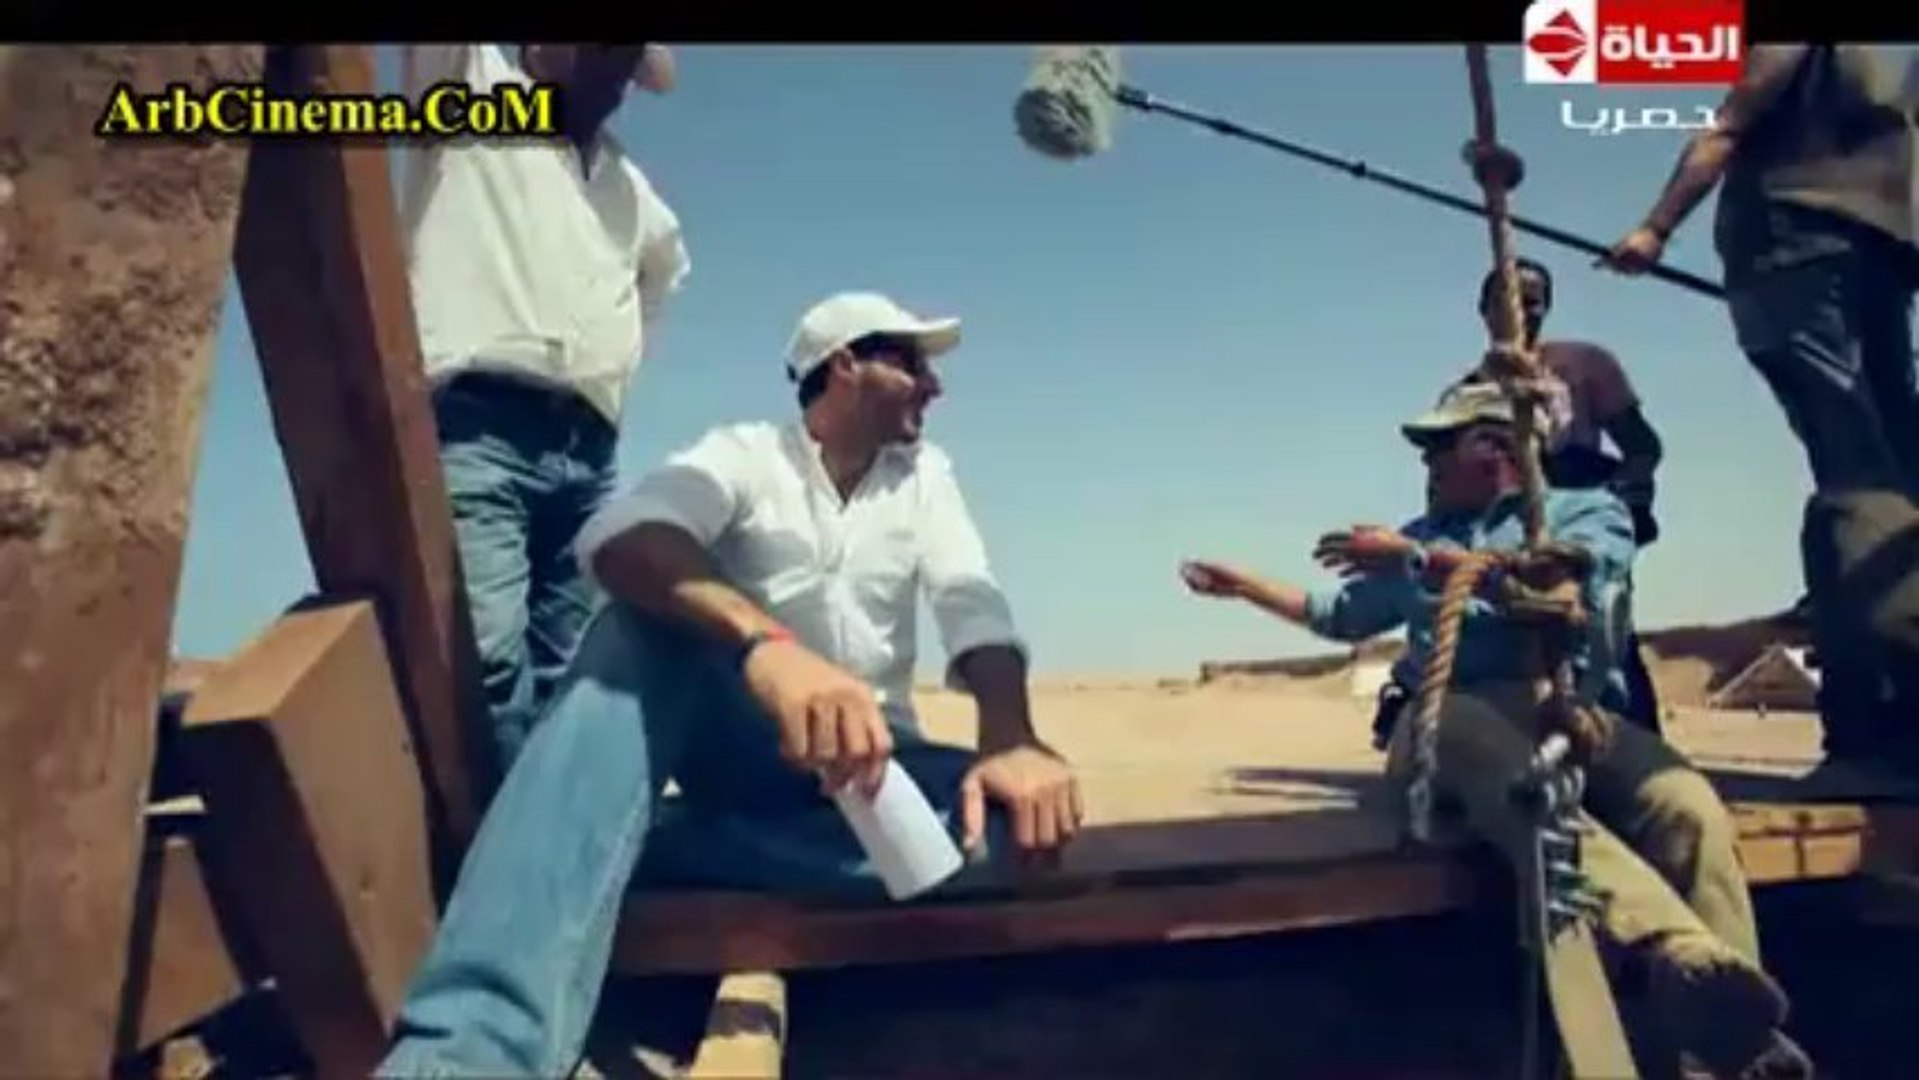 رامز عنخ امون الحلقة الـ 18 - احمد السعدني - video Dailymotion